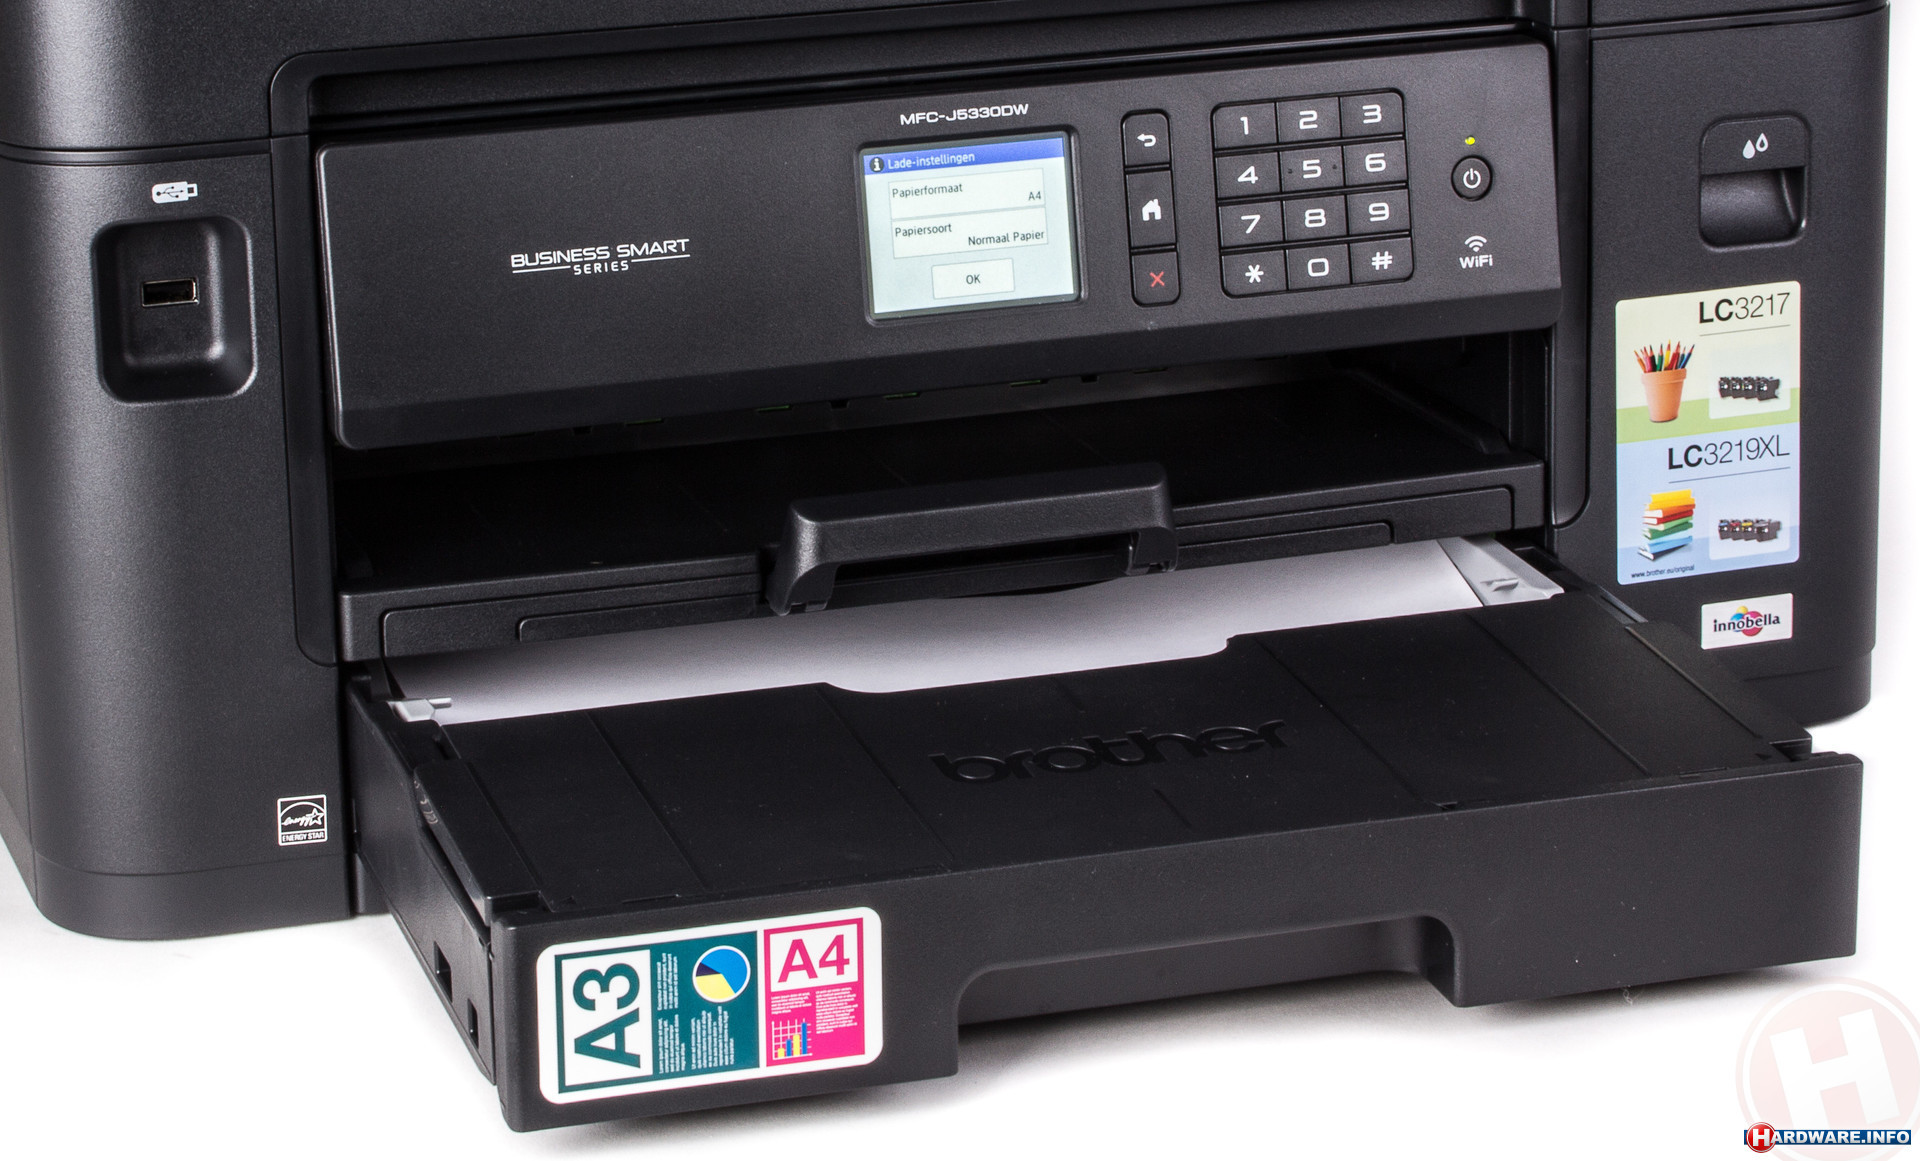 Cyberruimte Lucky communicatie Voordelig printen, scannen en kopiëren: 8 inkjet all-in-ones getest -  Afdrukkosten - Hardware Info